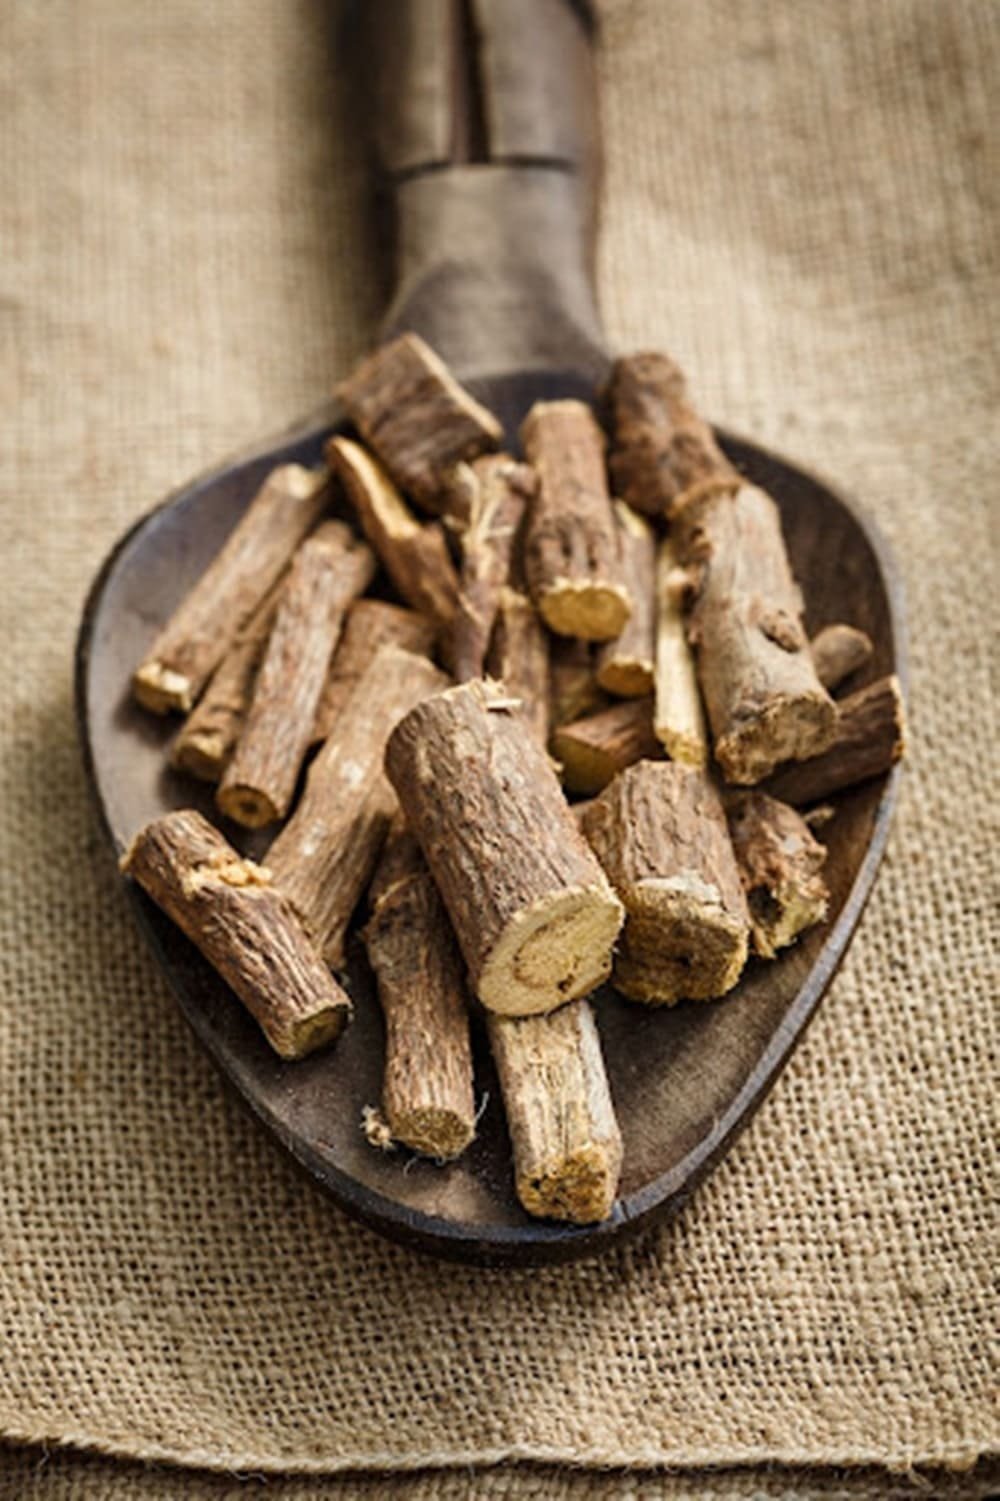 licorice root health benefits